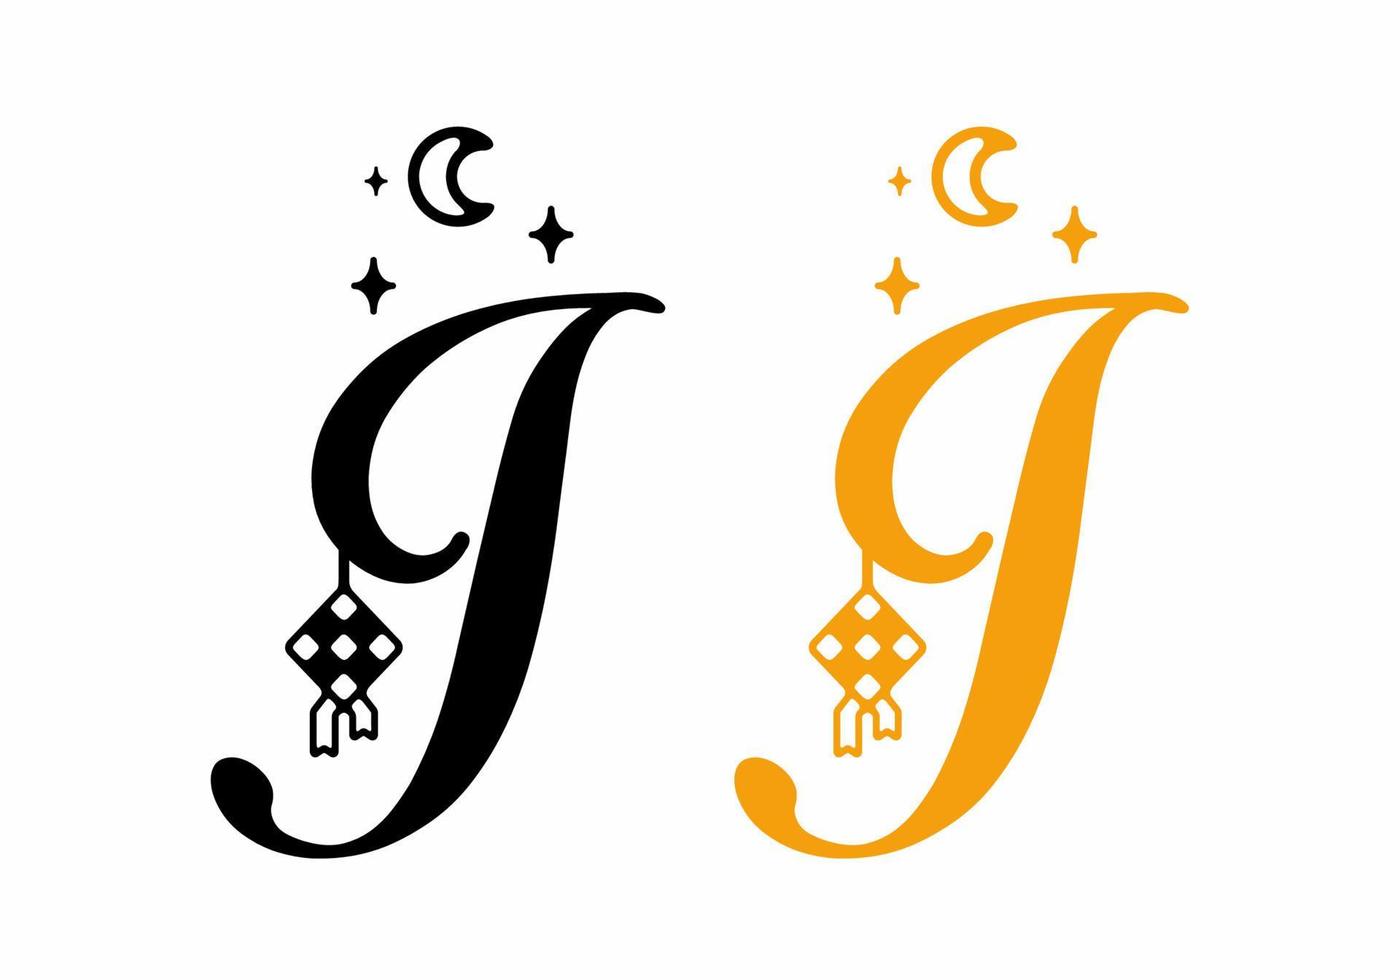 schwarz und gelb von j anfangsbuchstaben im ramadan-thema vektor